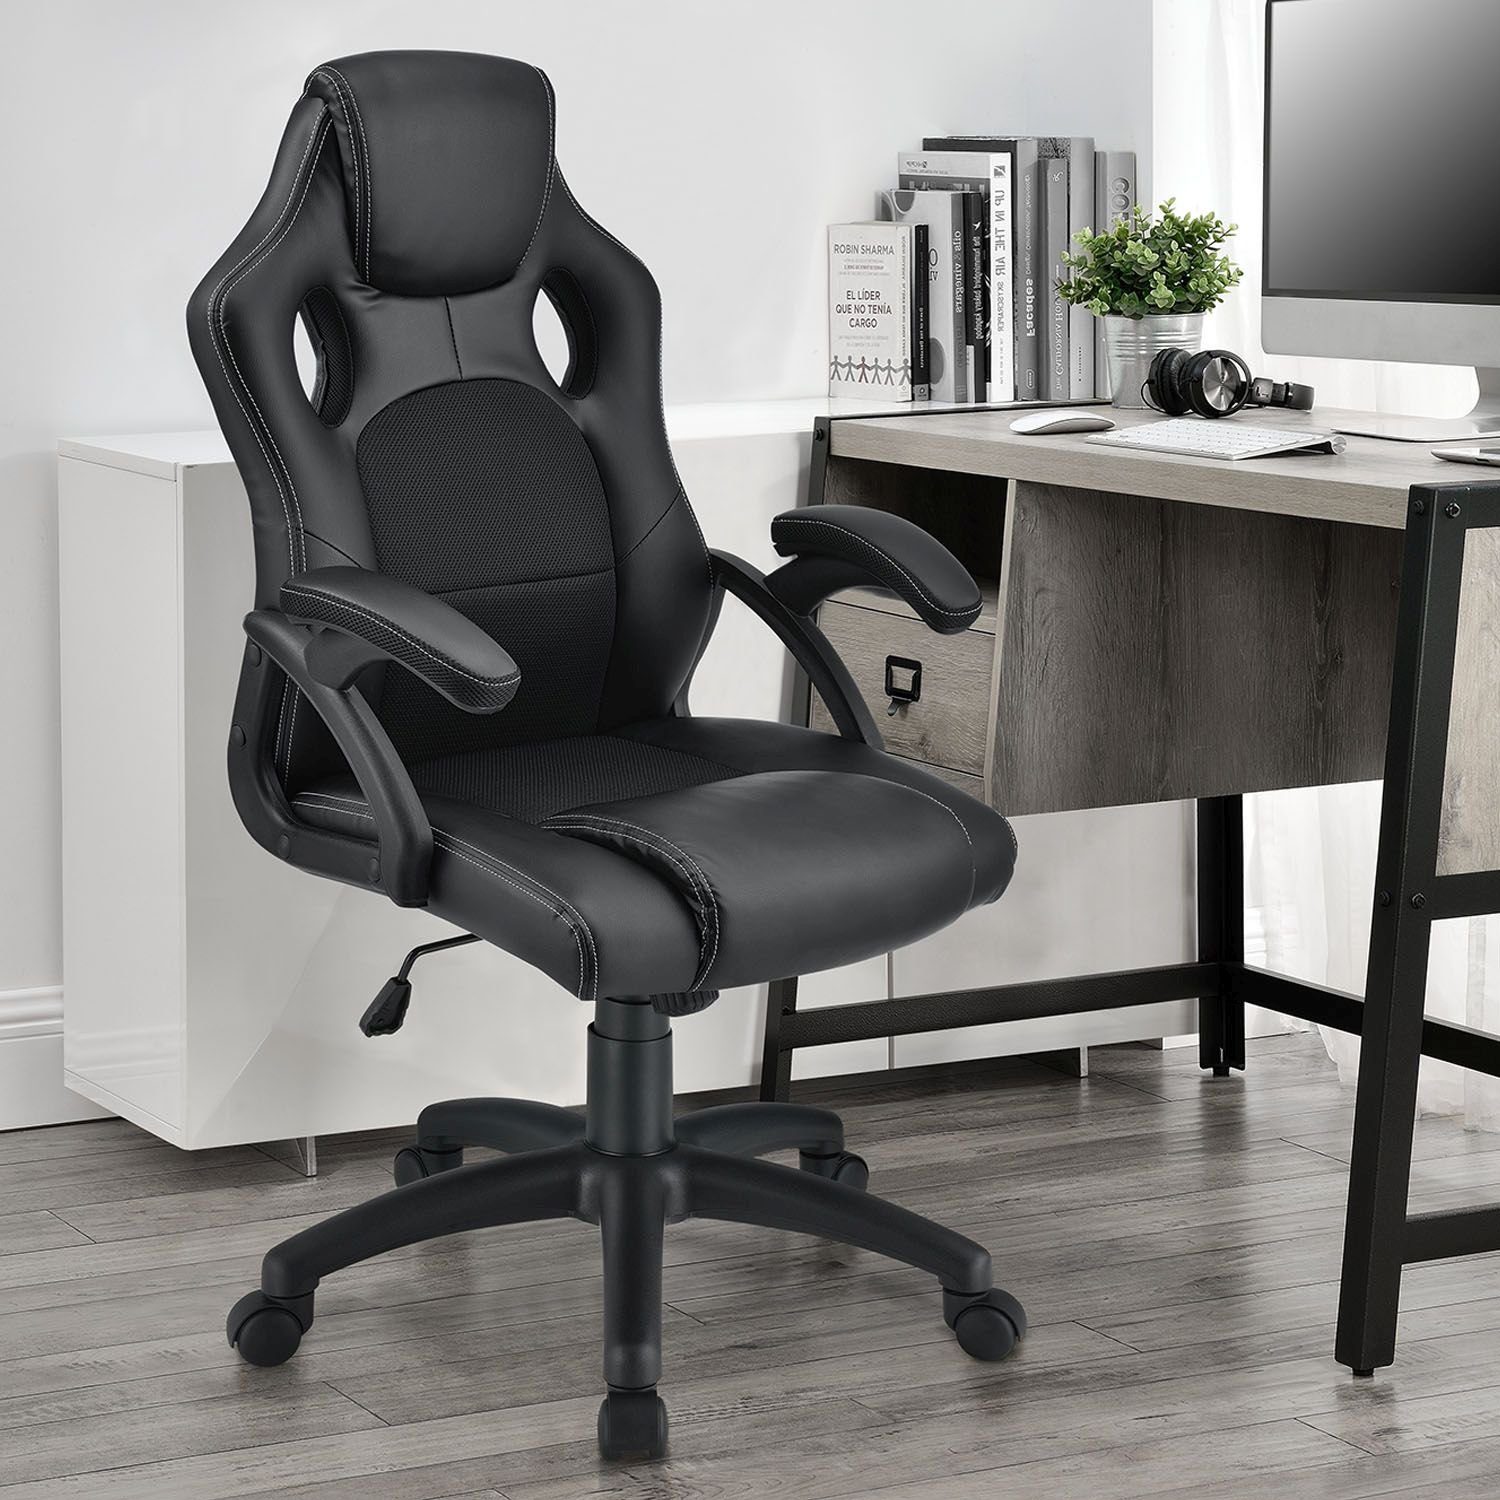 Juskys Ergonomisch Gaming-Stuhl Sitzfläche geformte kippbar und Rückenlehne Montreal, Schwarz Sitzfläche,